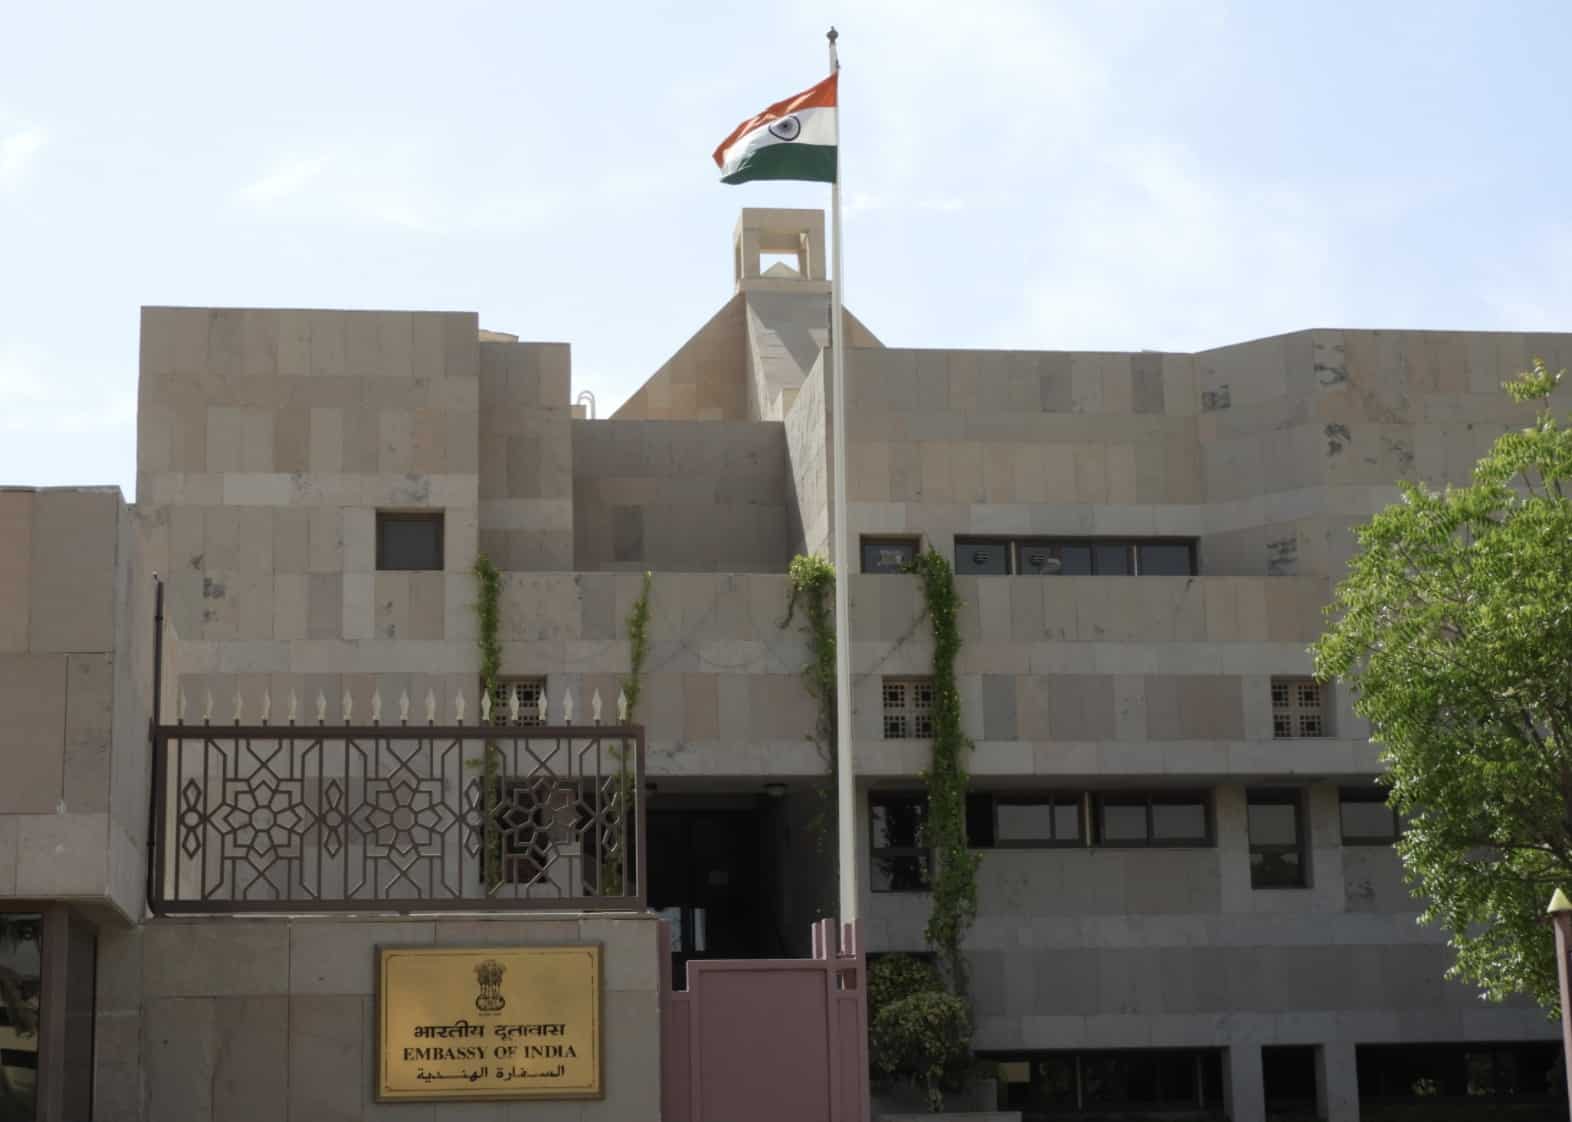 السفارة الهندية في أبو ظبي تبسط عملية الحصول على شهادة الشرطة - أخبار